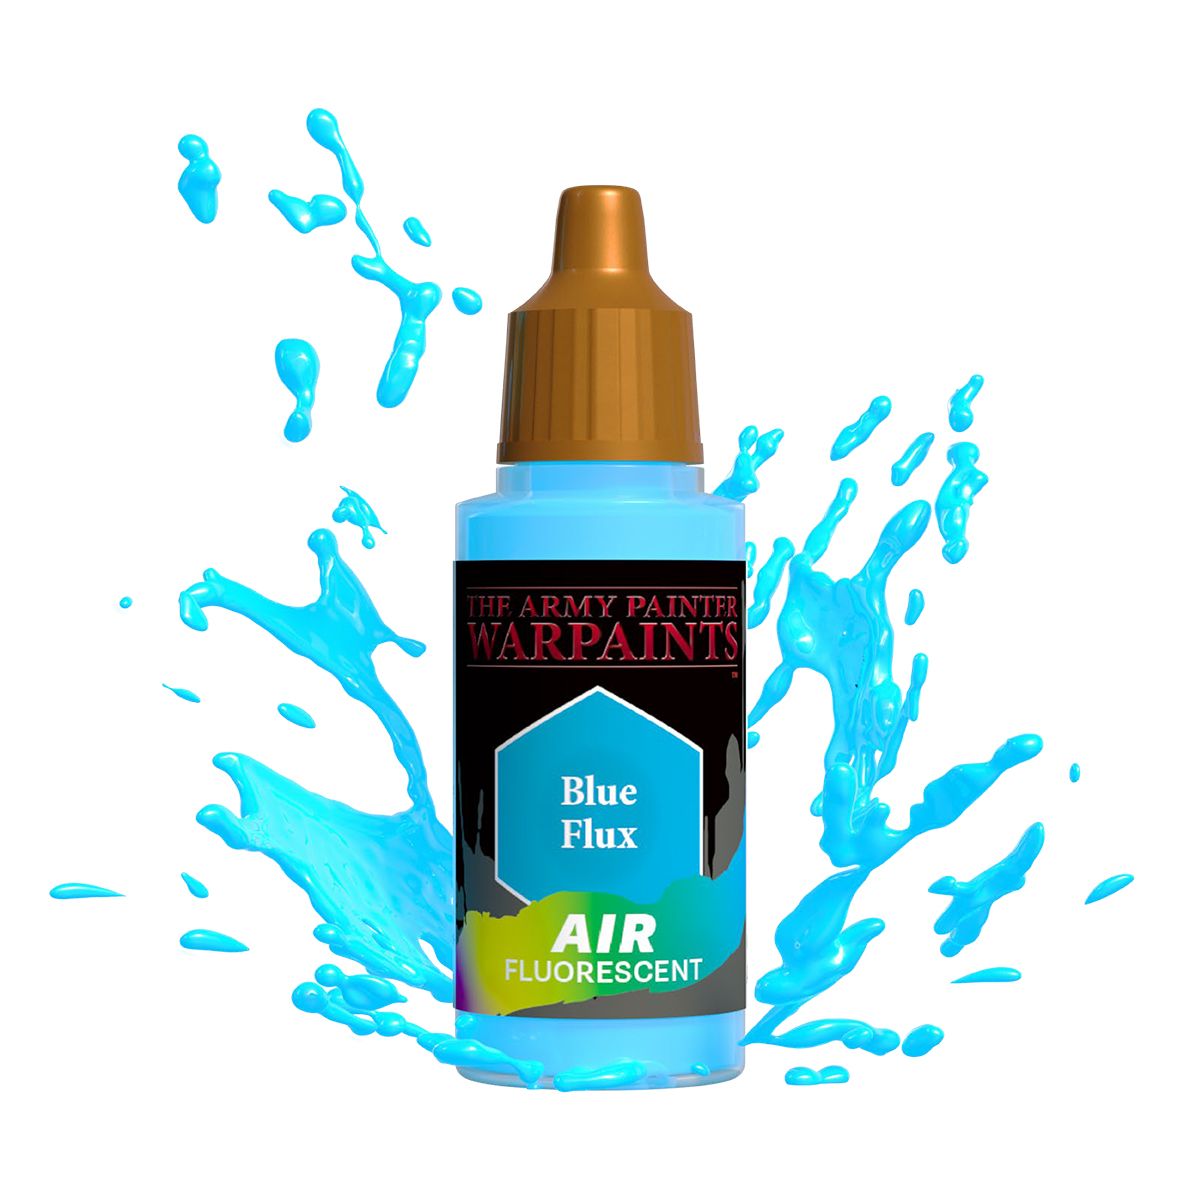 Army Painter Warpaints Air Fluorescent: Blue Flux 18ml